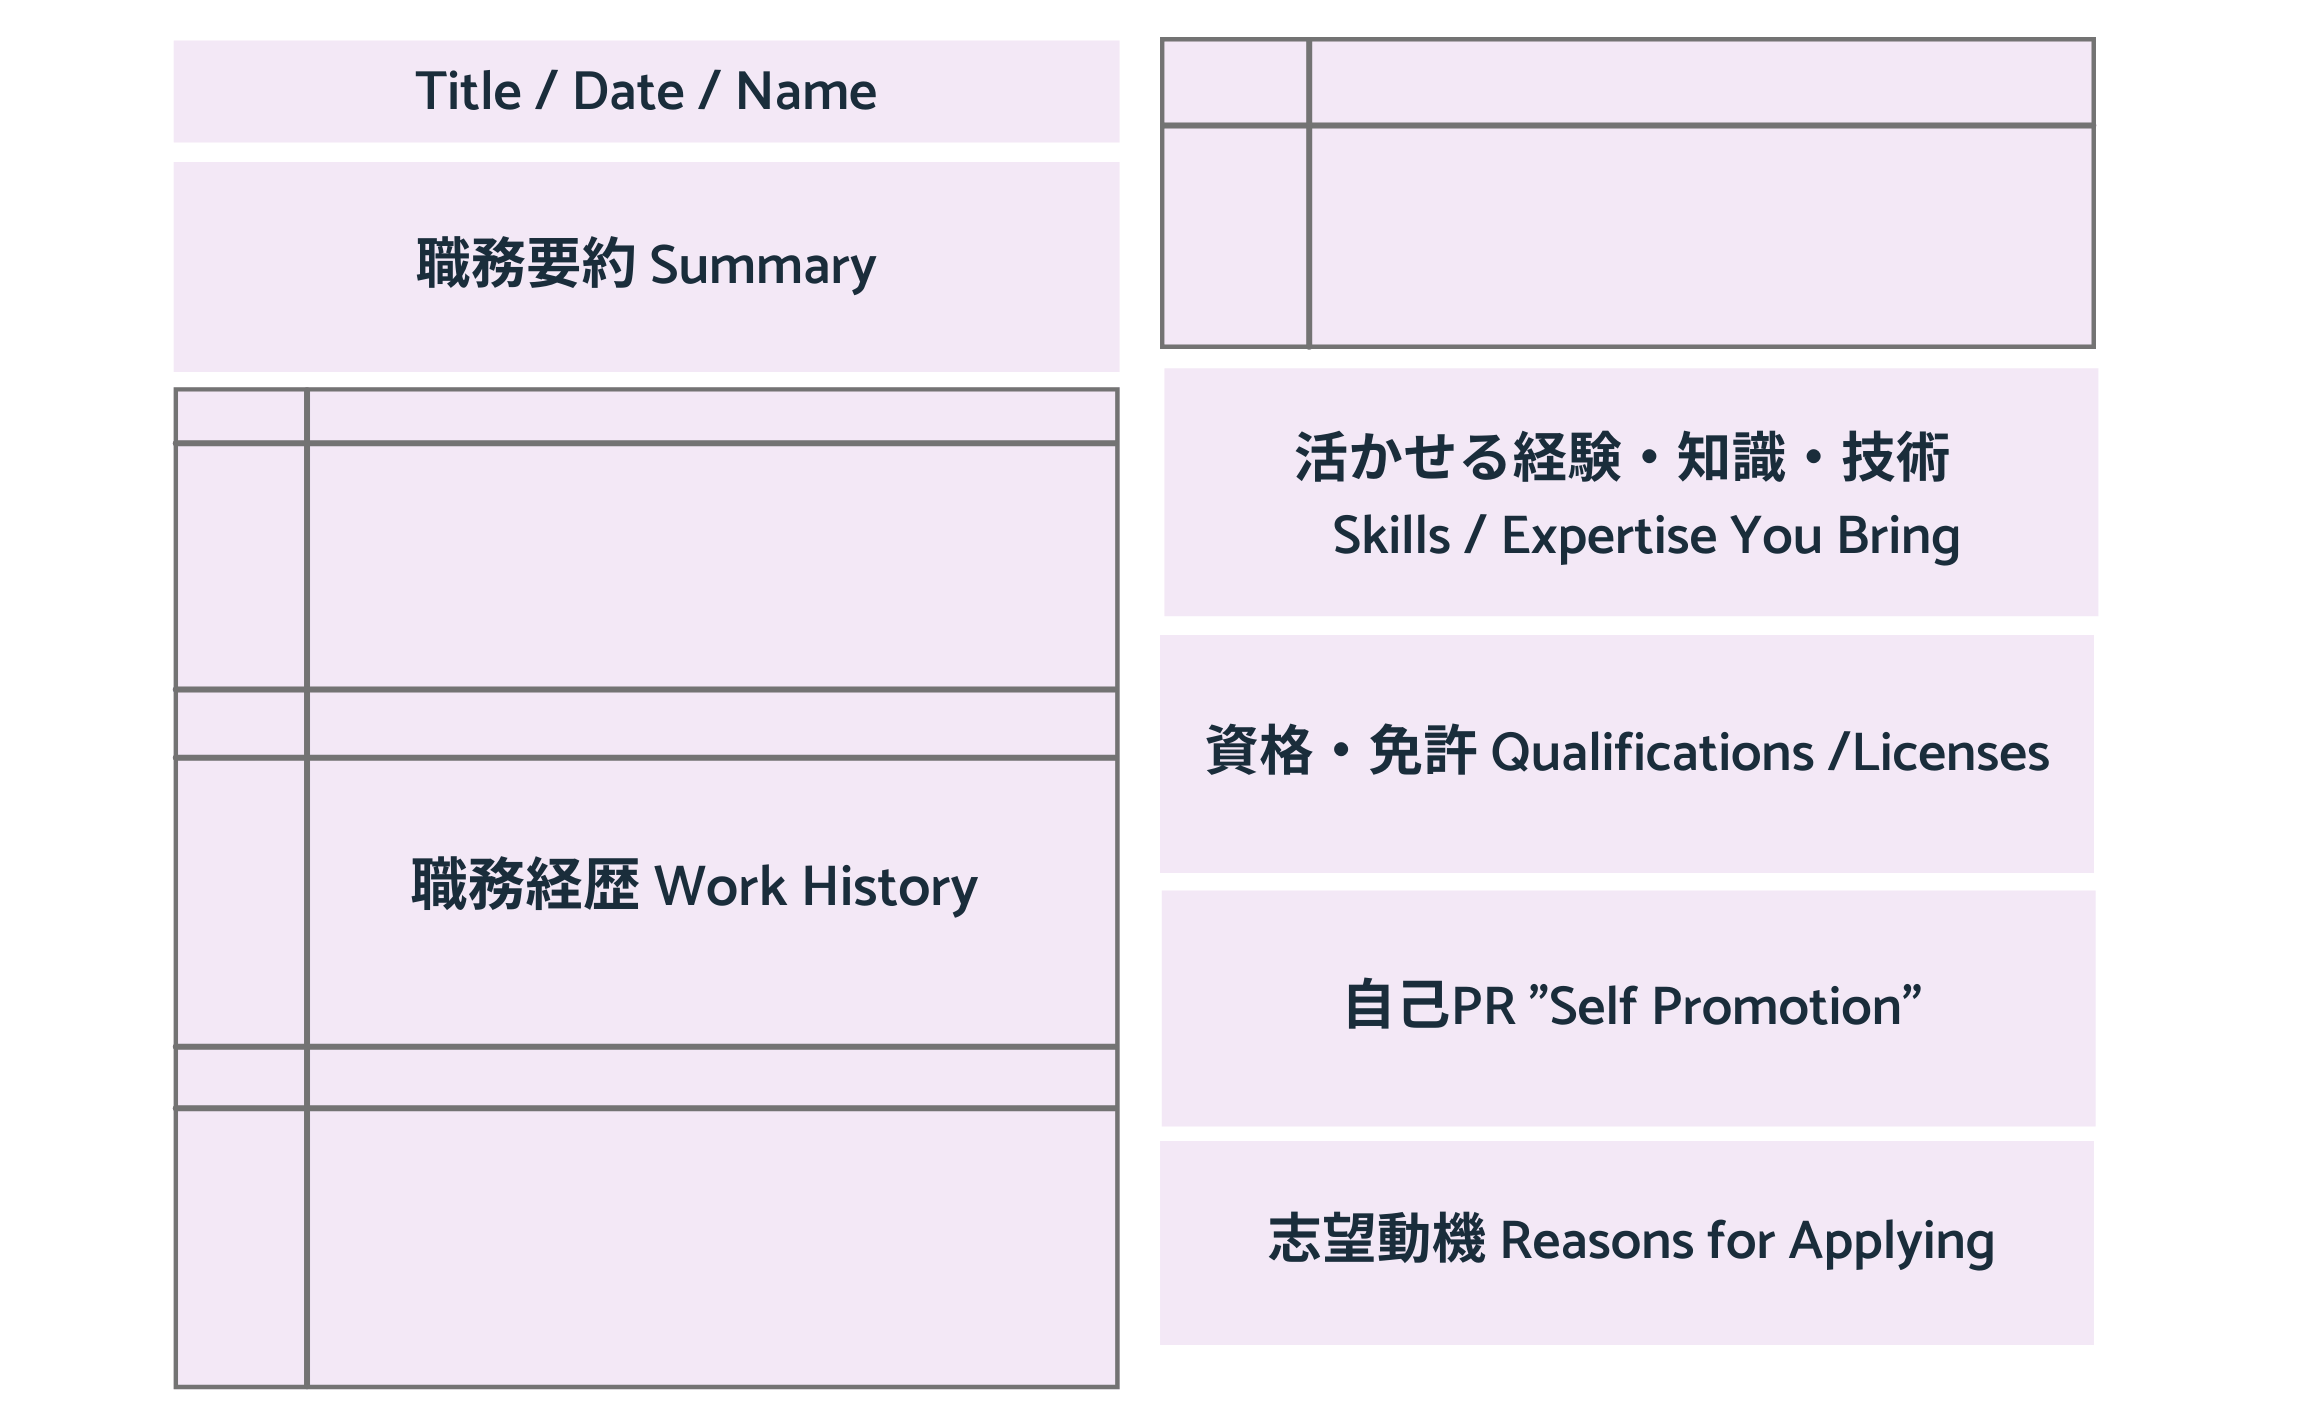 Japanese Resumes: Example formatting for a shokumukeirekisho